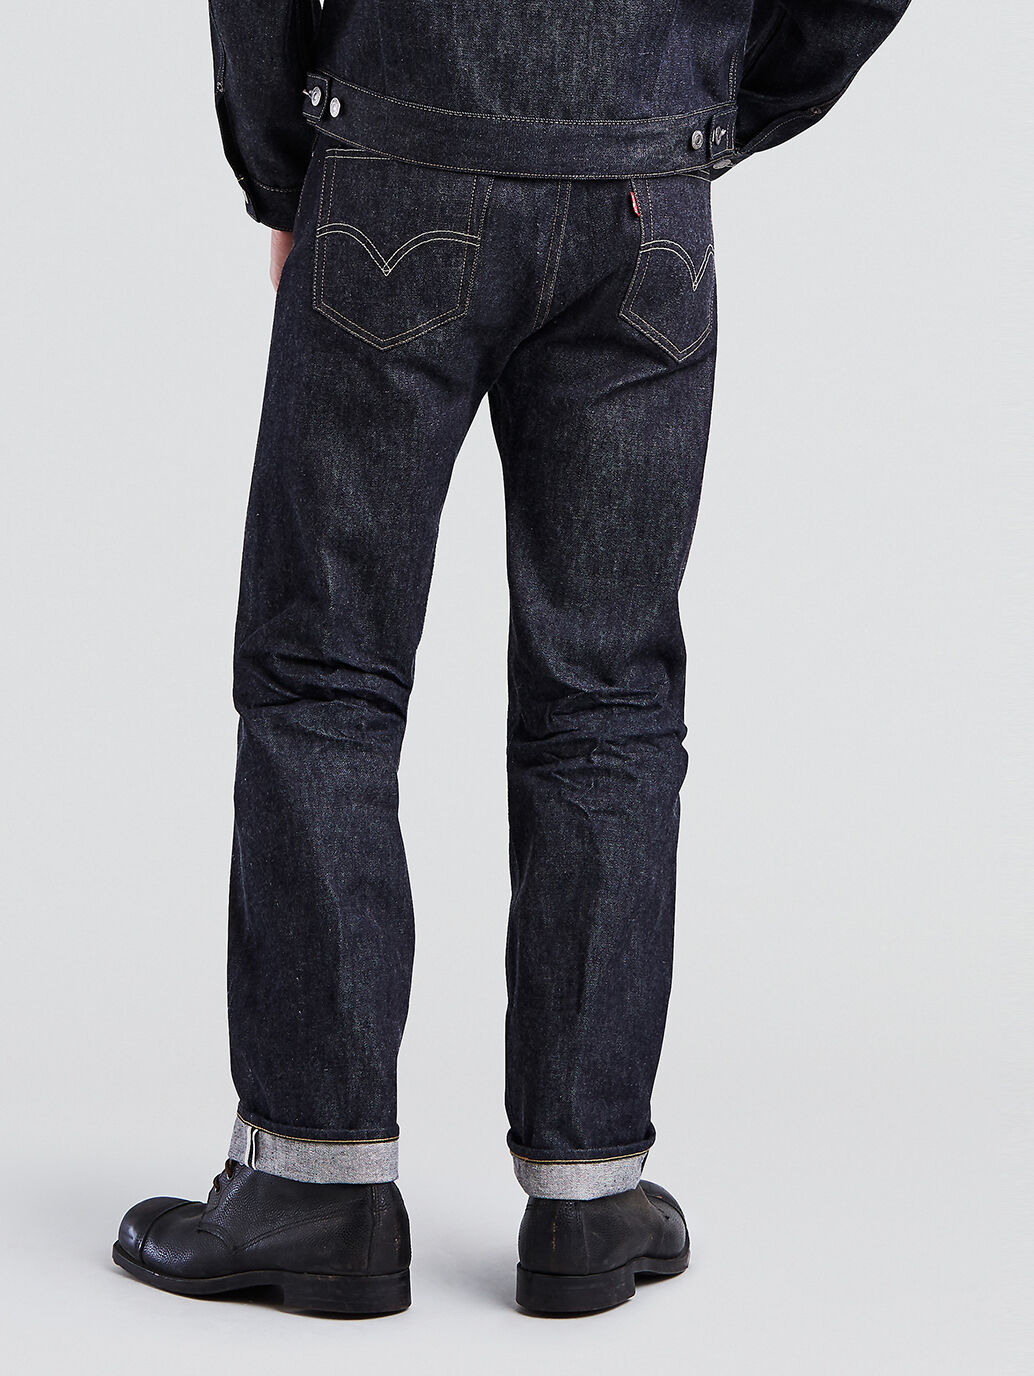 levis 1955 jeans